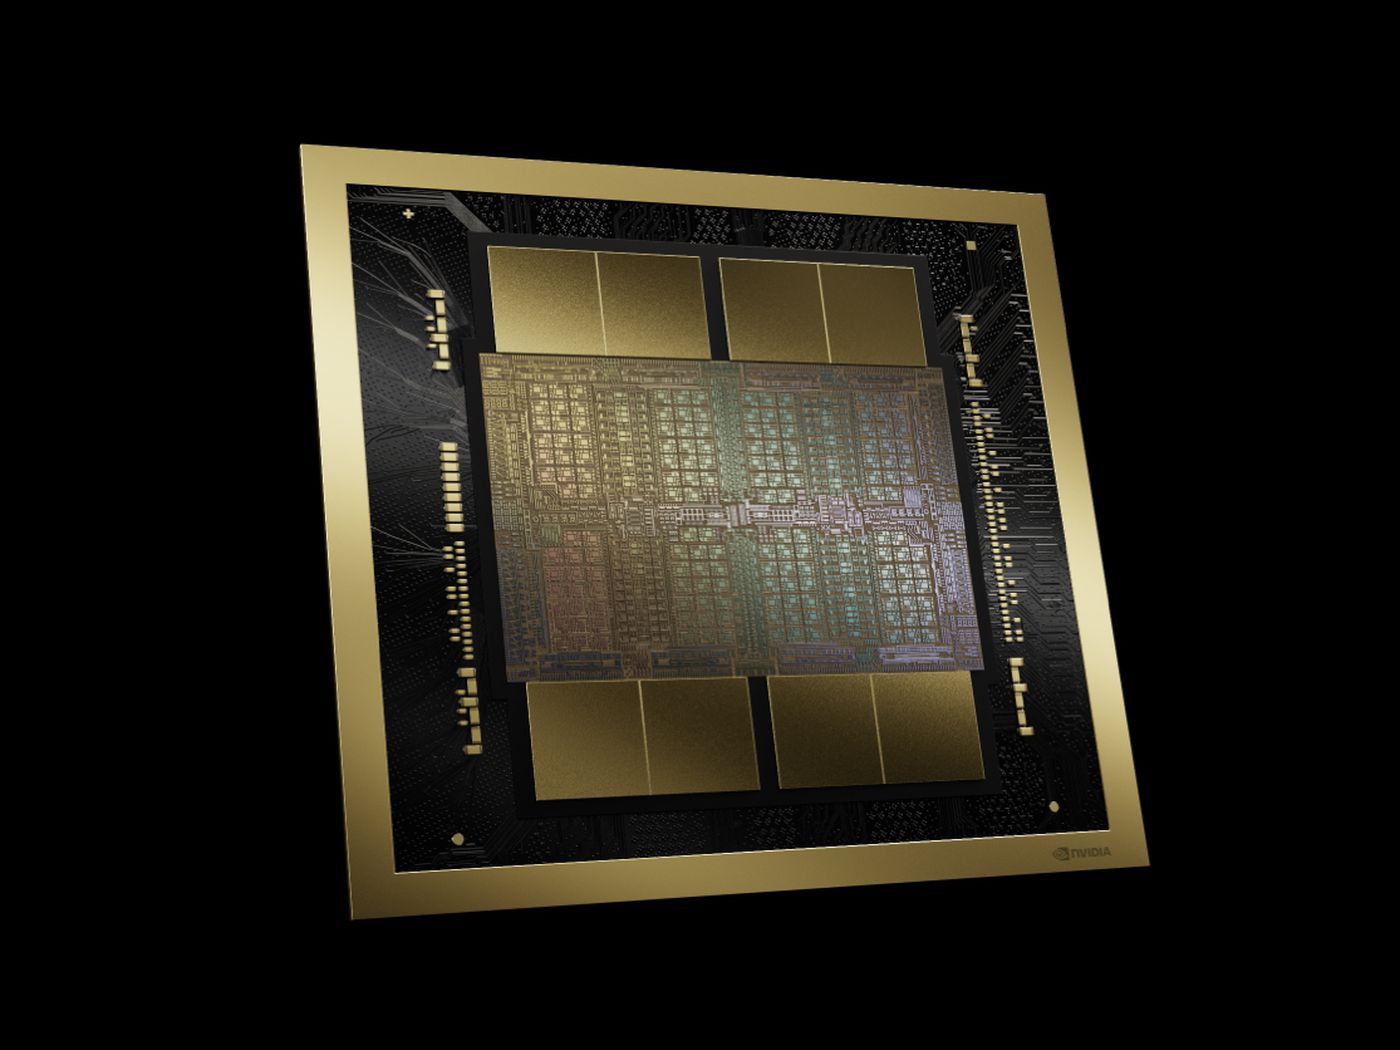 انویدیا از تراشه‌های گرافیکی B200 و GB200 رونمایی کرد : قدرتمندترین تراشه‌های مبتنی بر هوش مصنوعی !